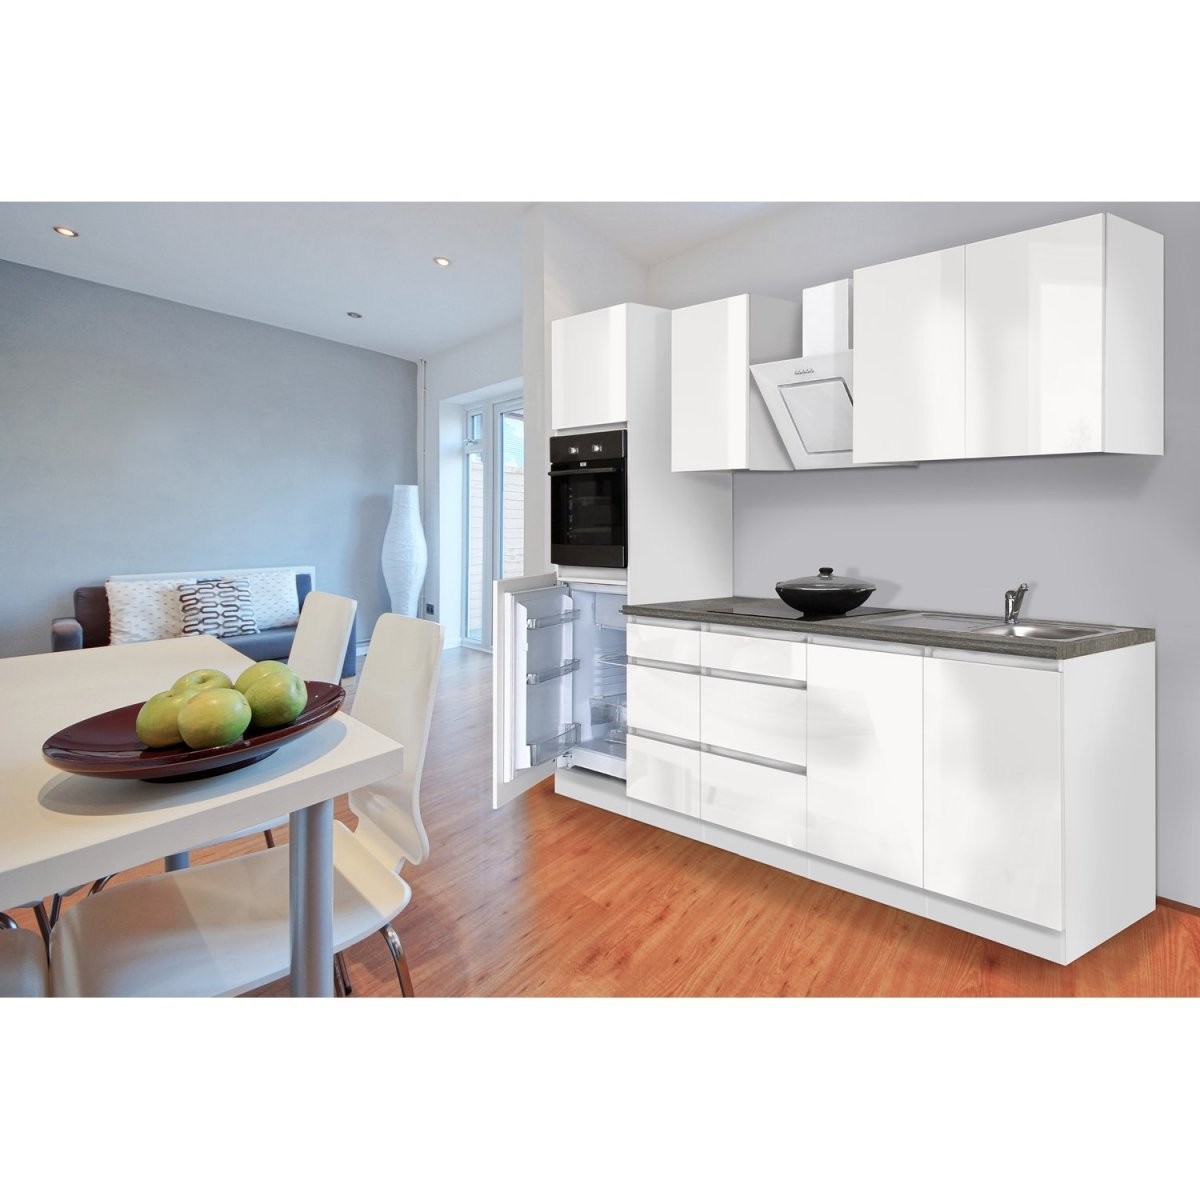 Respekta Küchenzeile Ohne Egeräte 270 Cm Weiß Hochglanz Kaufen Bei Obi von Küche Mit E Geräten Ohne Kühlschrank Bild